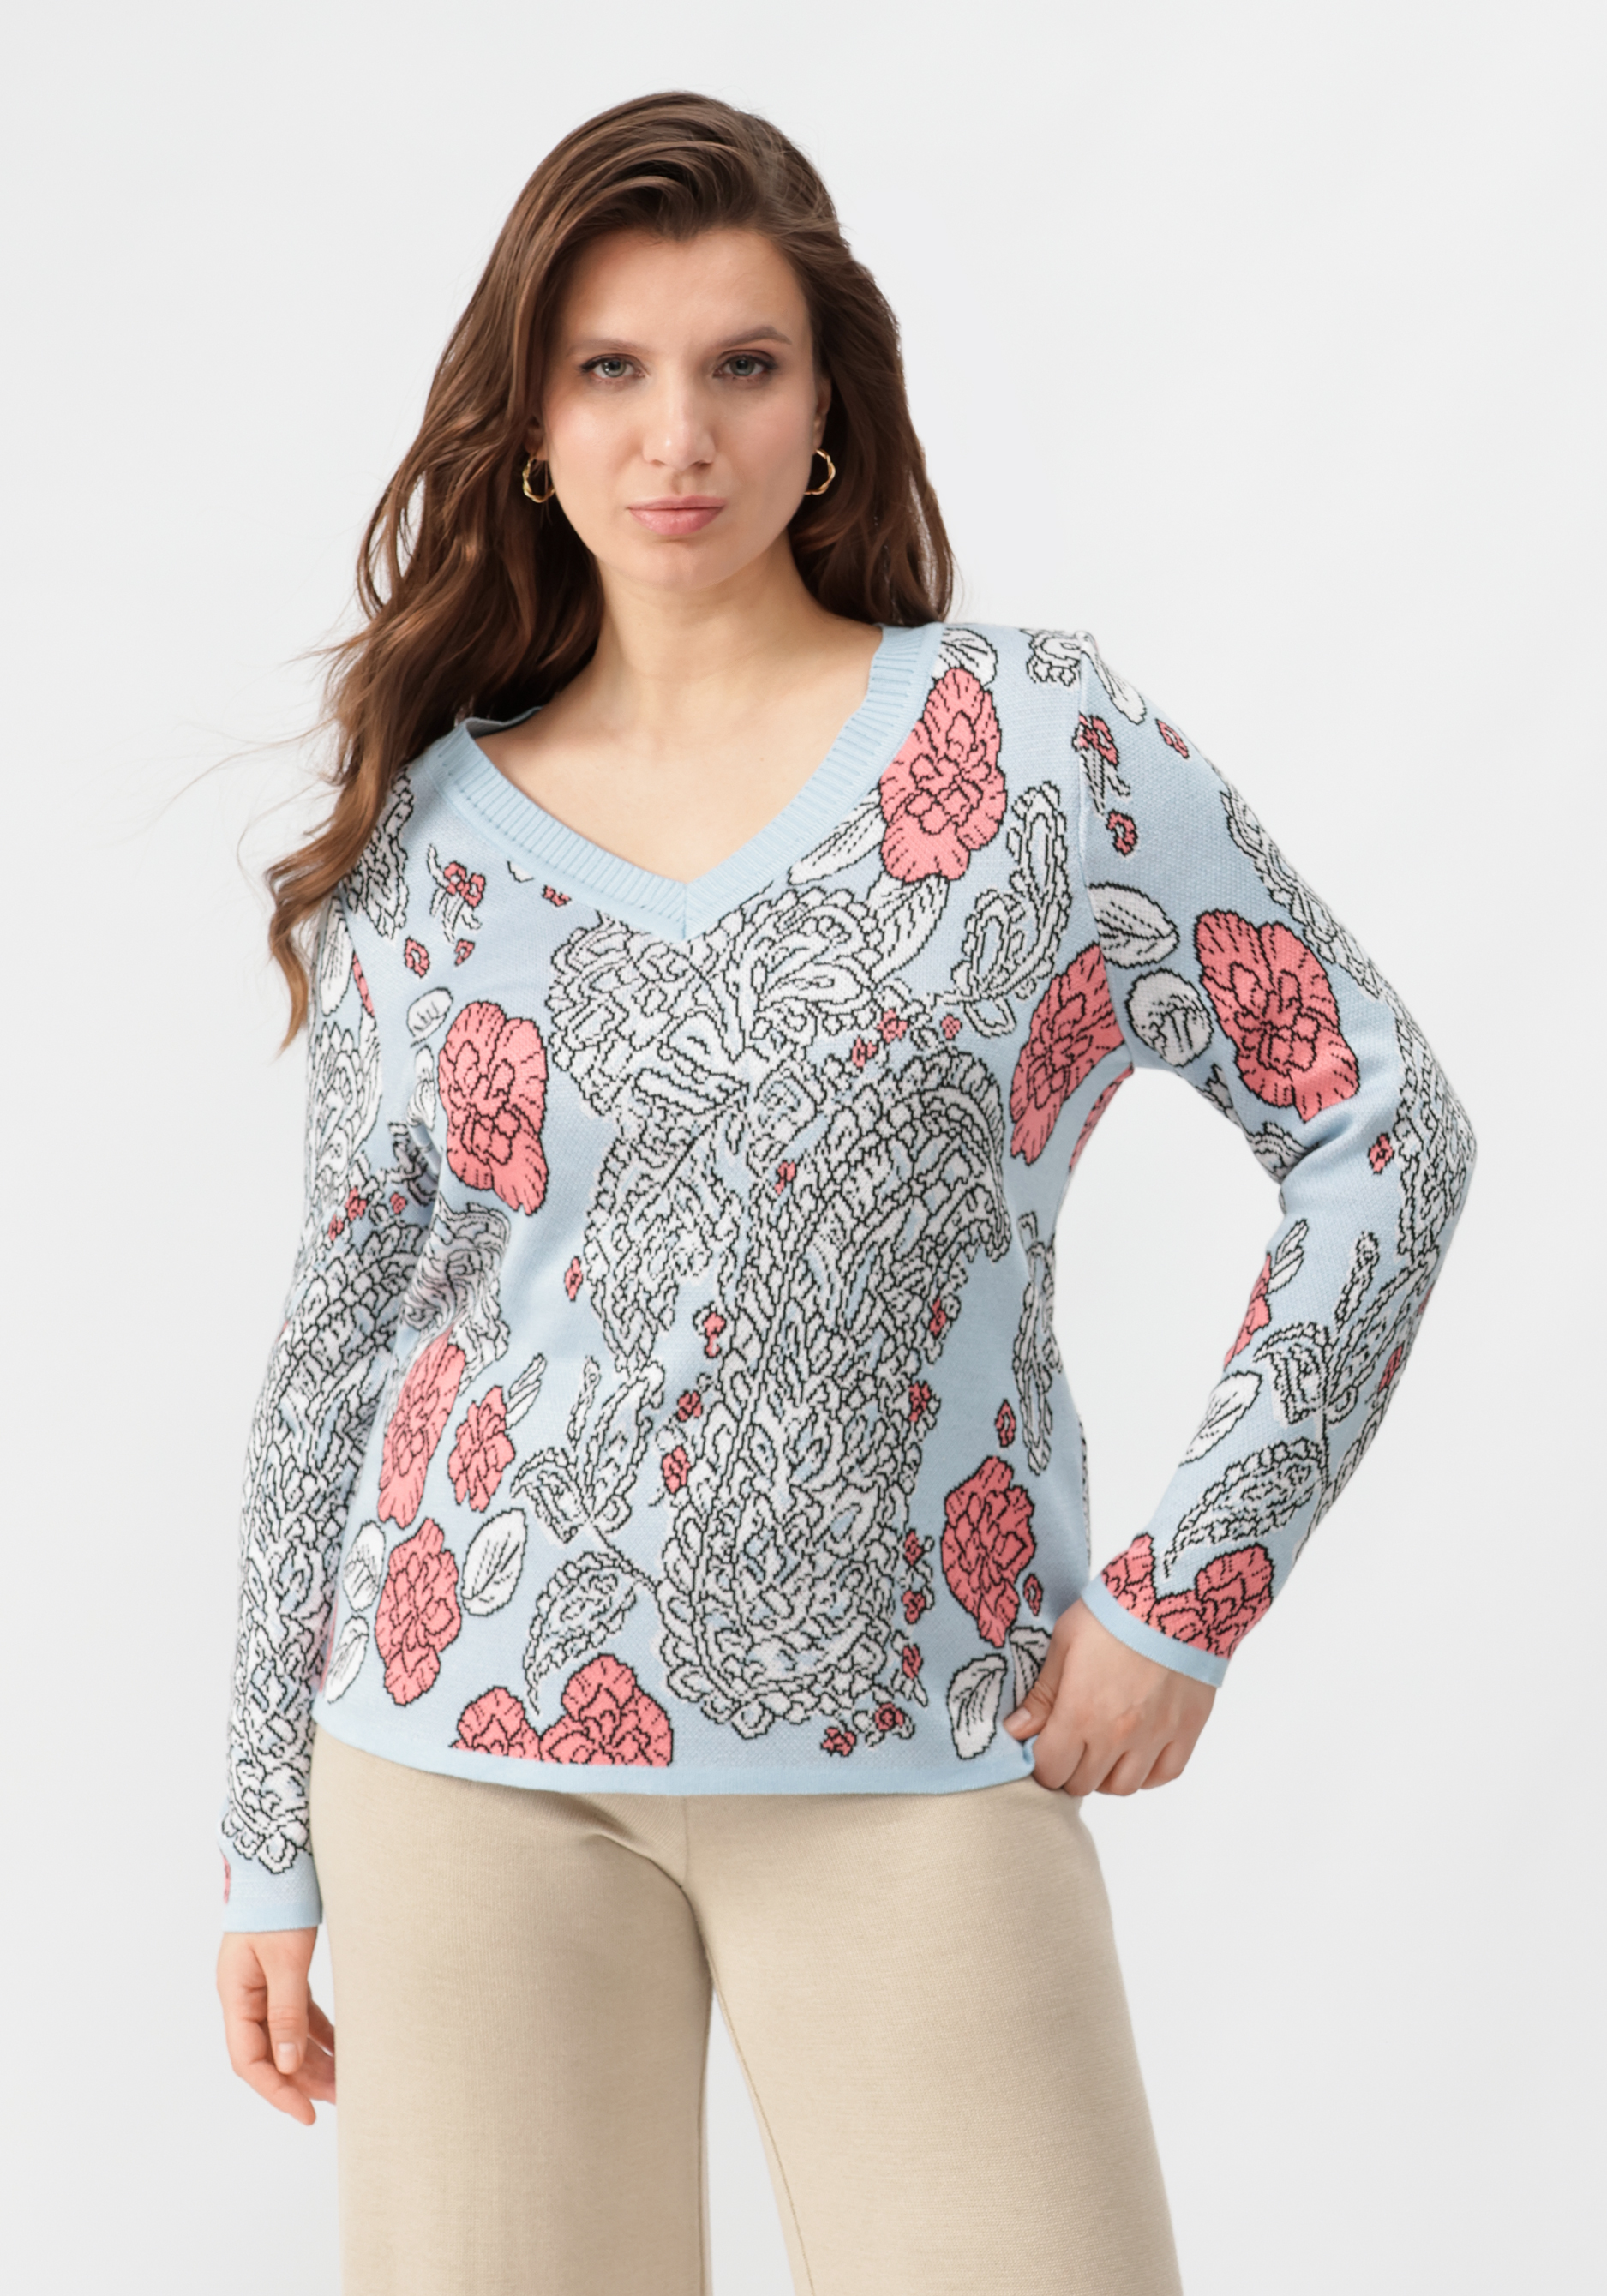 Пуловер с V-образным вырезом, цветным принтом